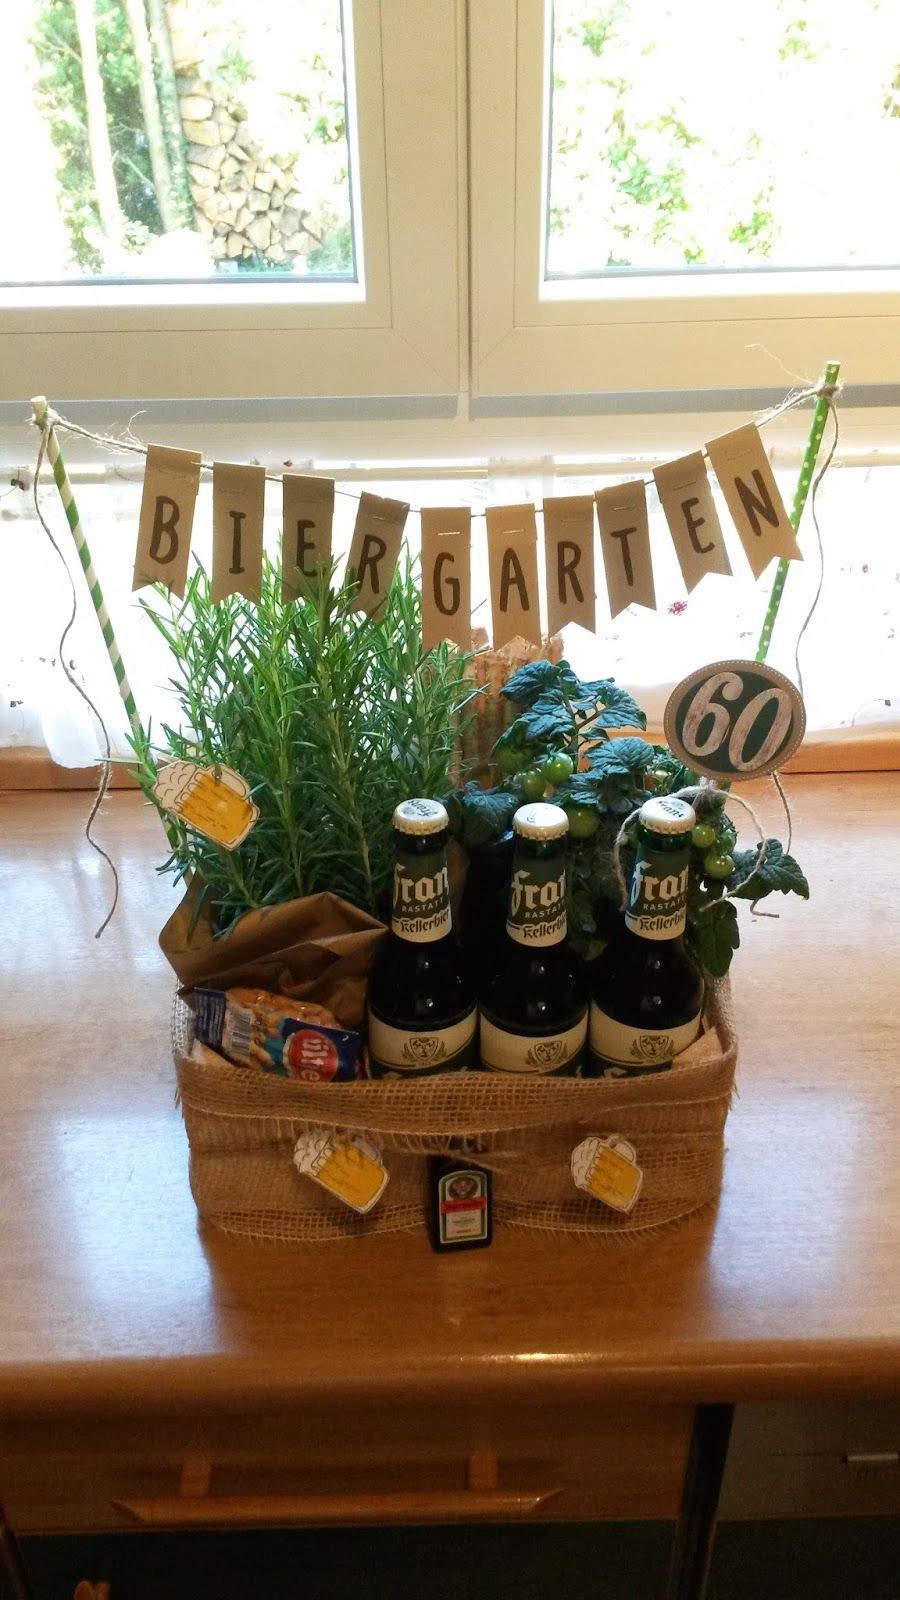 Lustige Geschenke Zum 70 Geburtstag Für Männer
 Biergarten 60 Geburtstag Geschenk